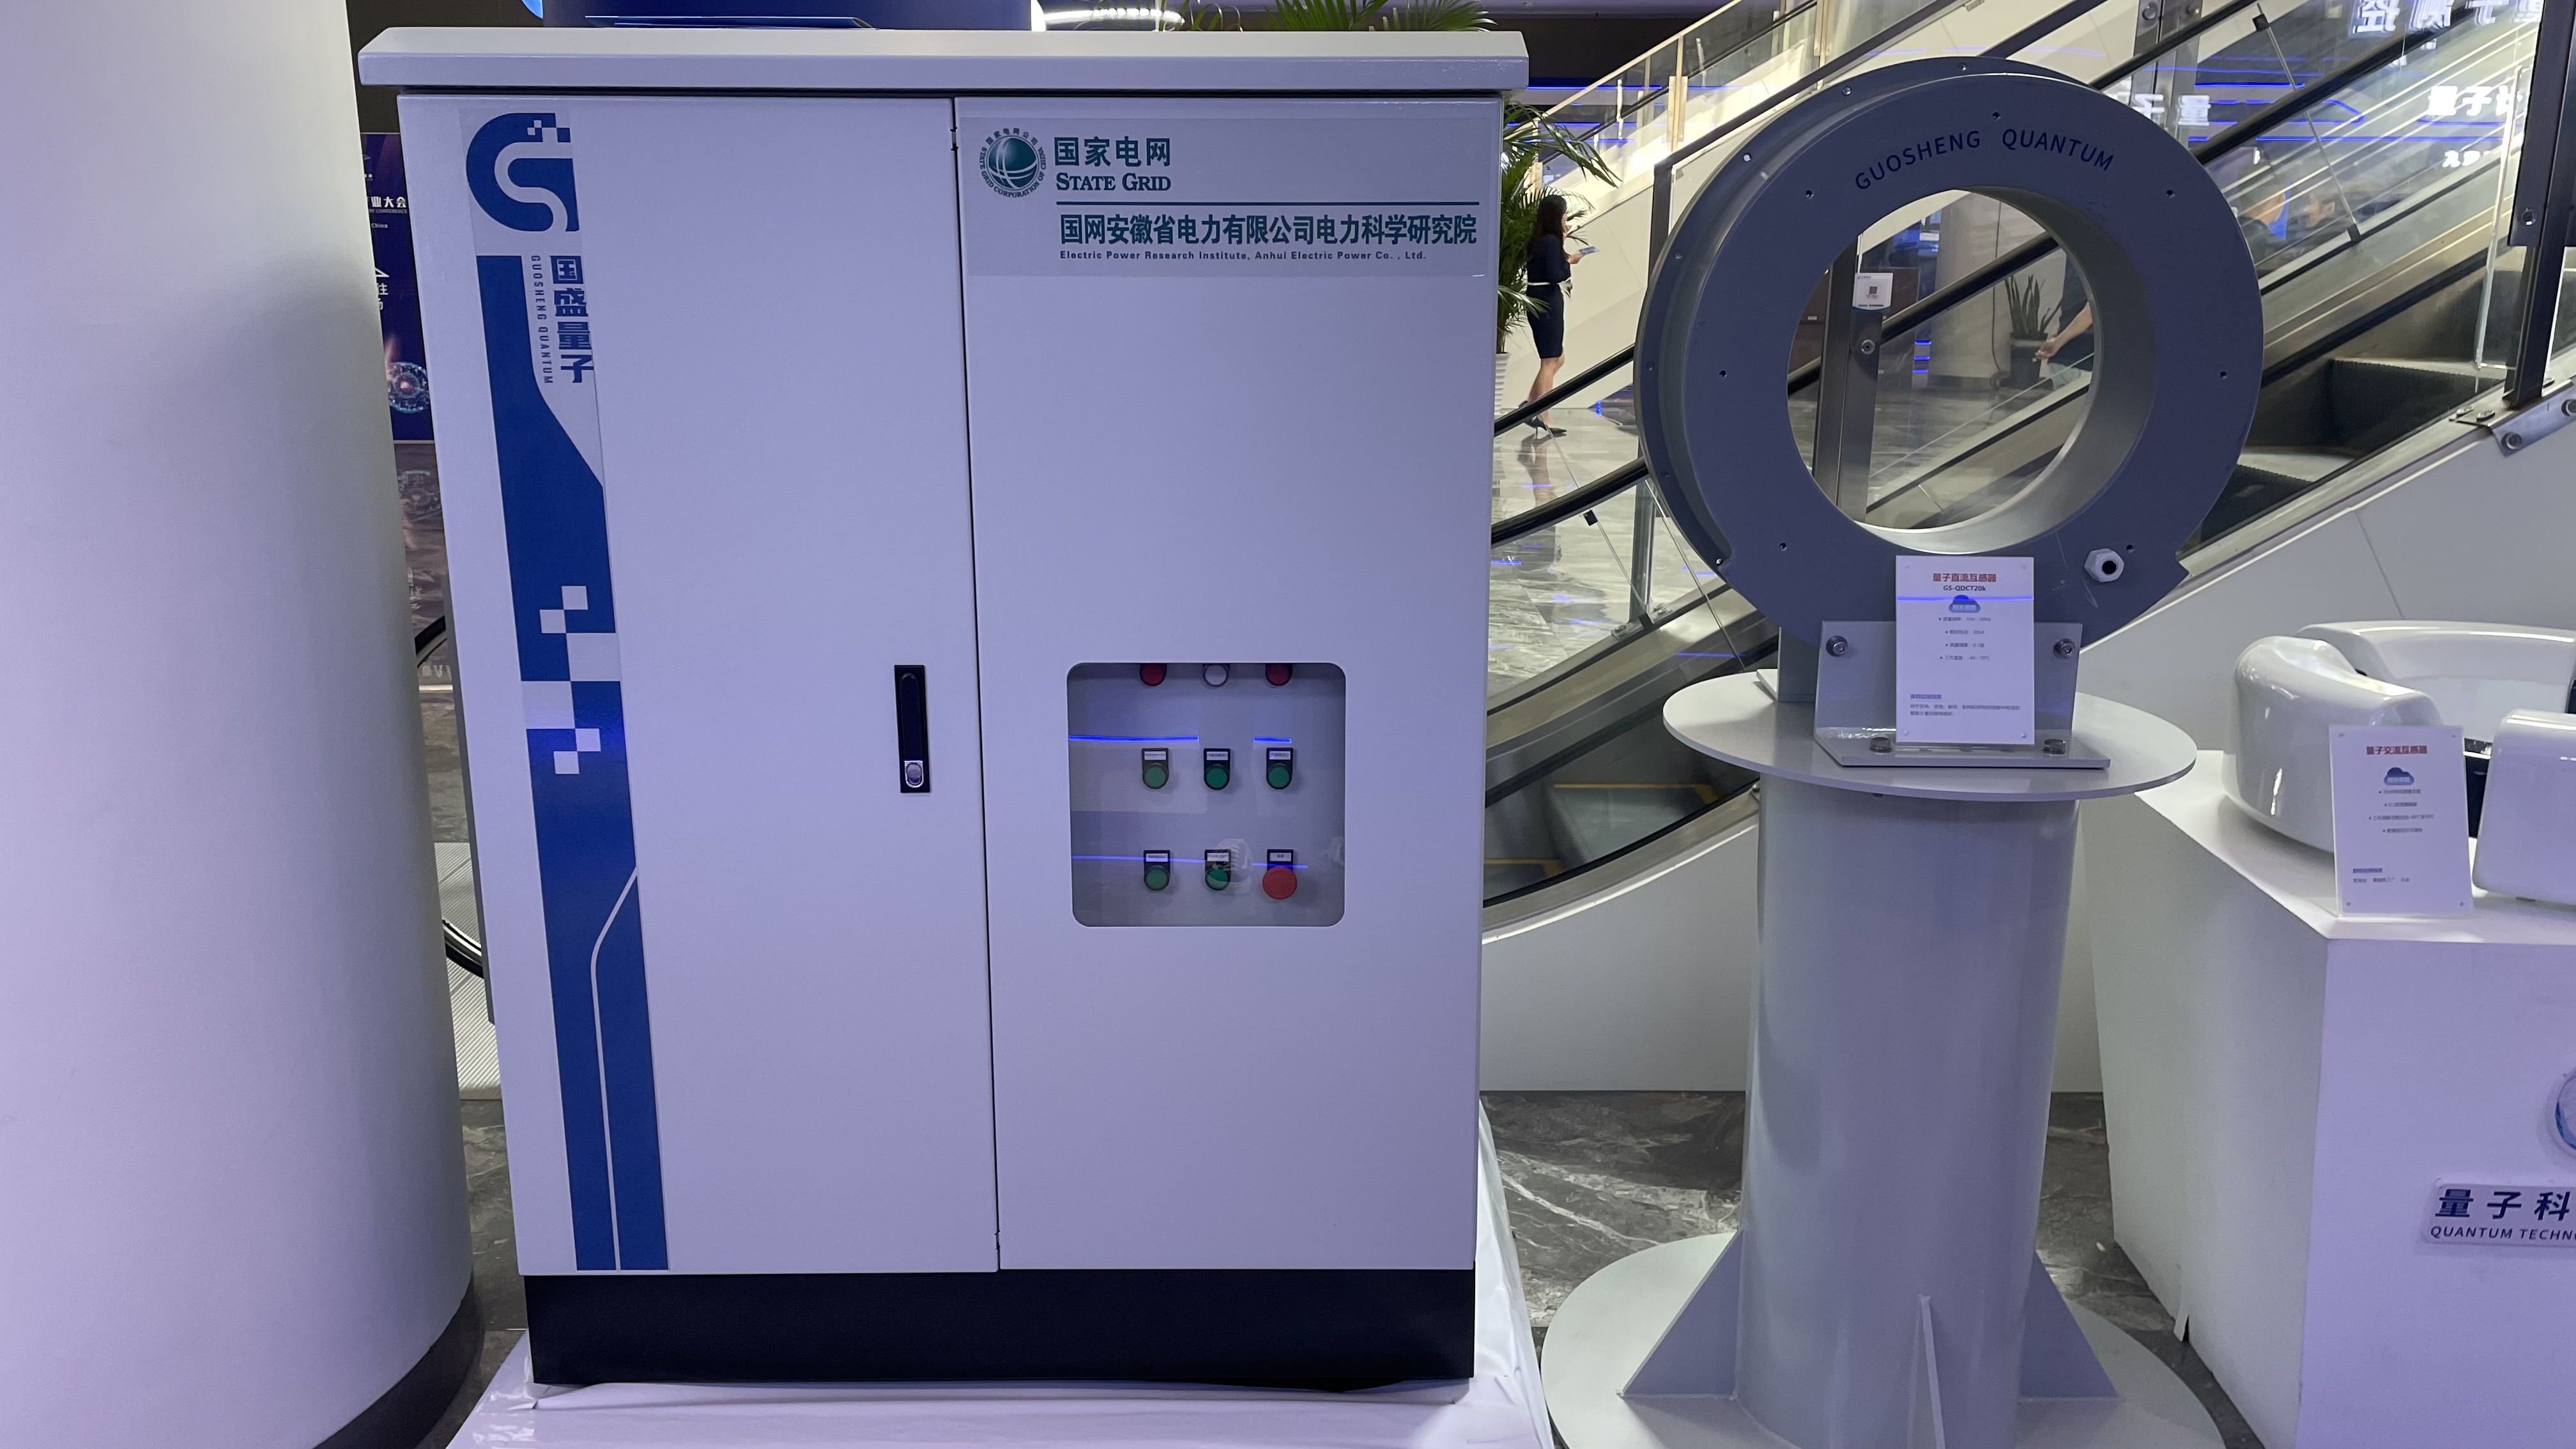 太阳成集团tyc33455cc自主研发的中国首台量子电流互感器在合肥挂网运行